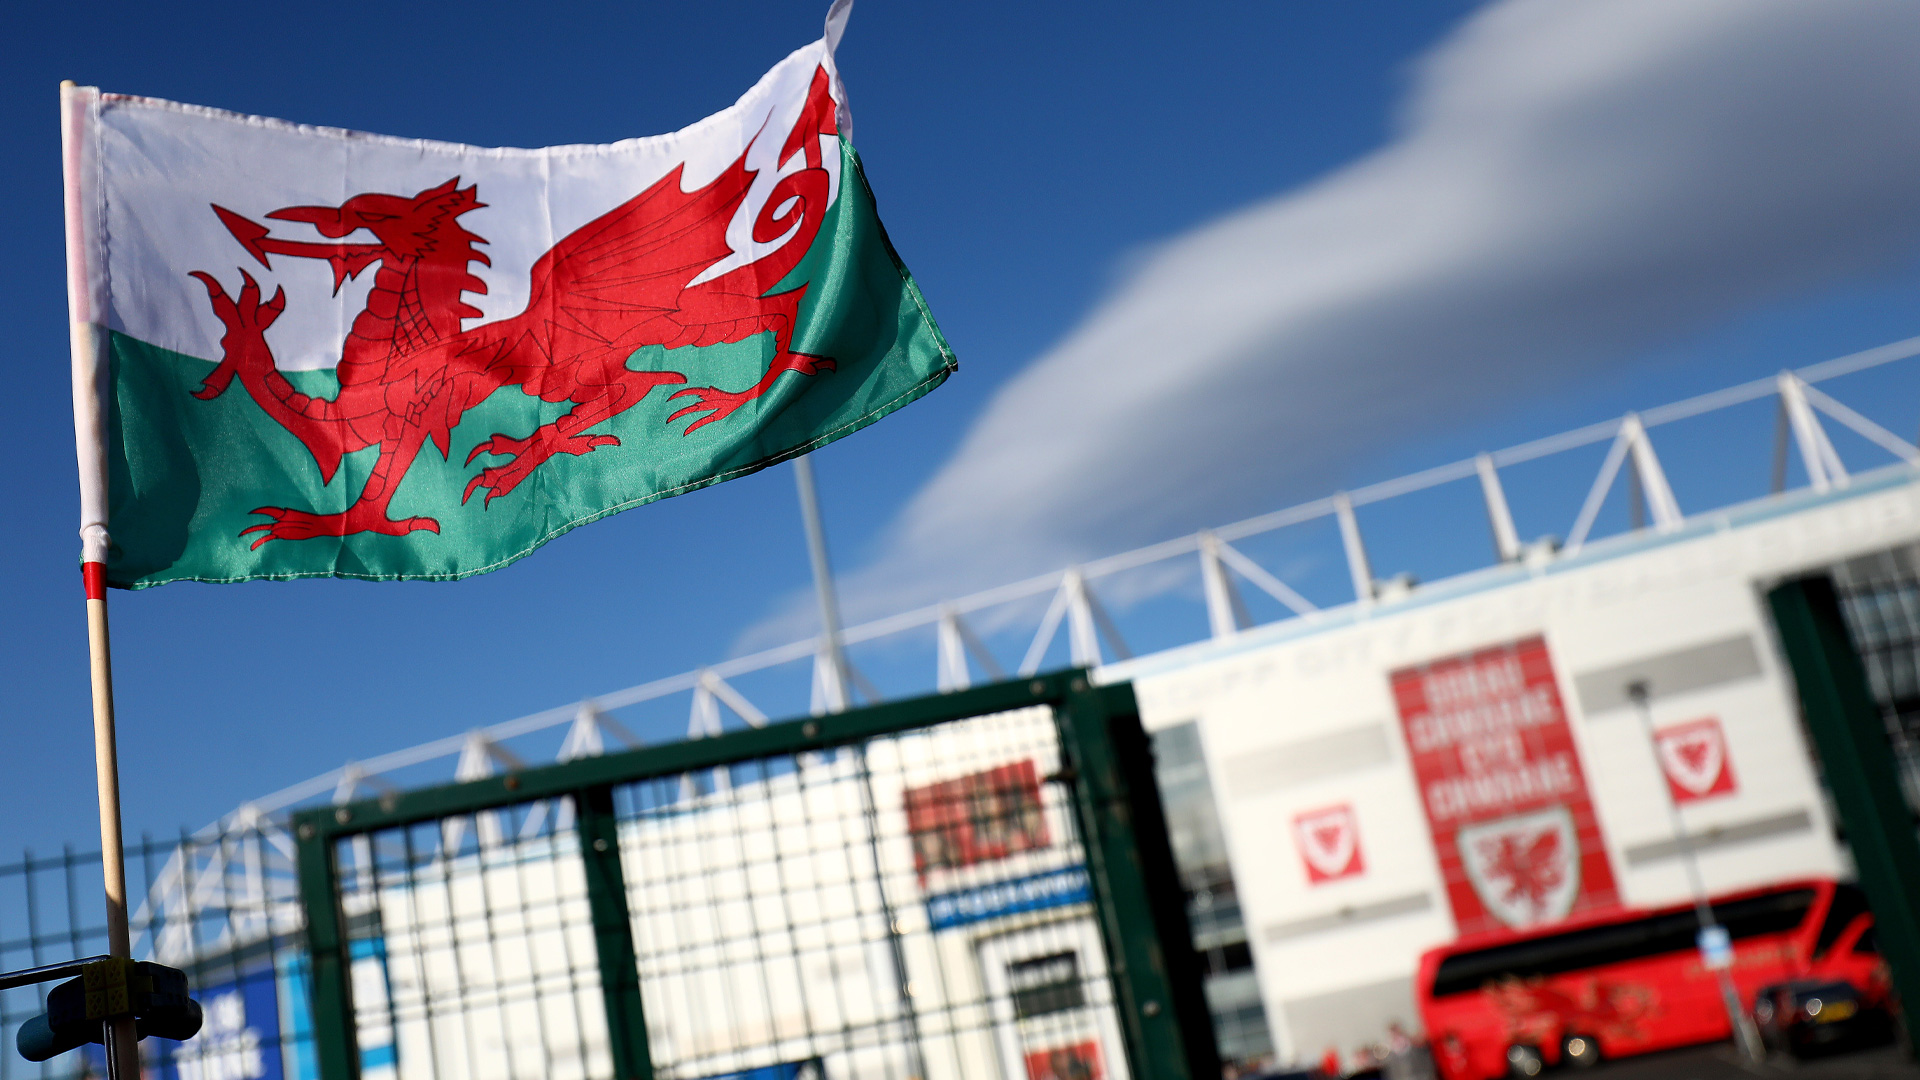 Wales flag outside Cardiff City Stadium